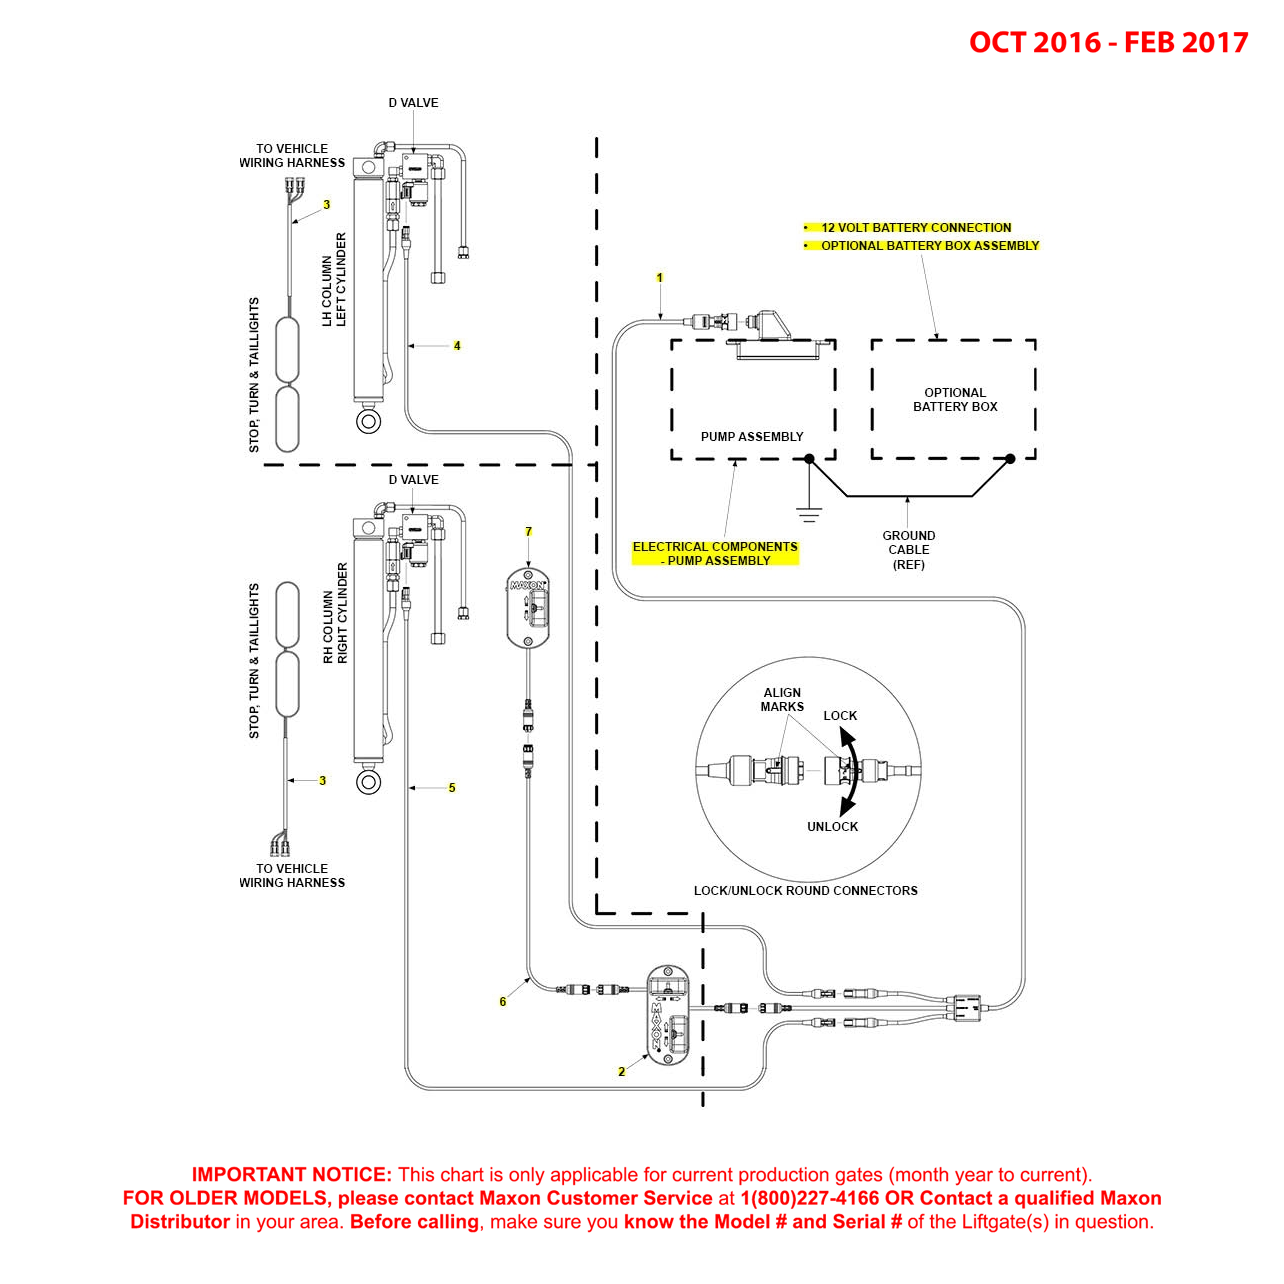 Maxon BMR (Oct 2016 - Feb 2017) MTE Hydraulics Electrical Systems Diagram